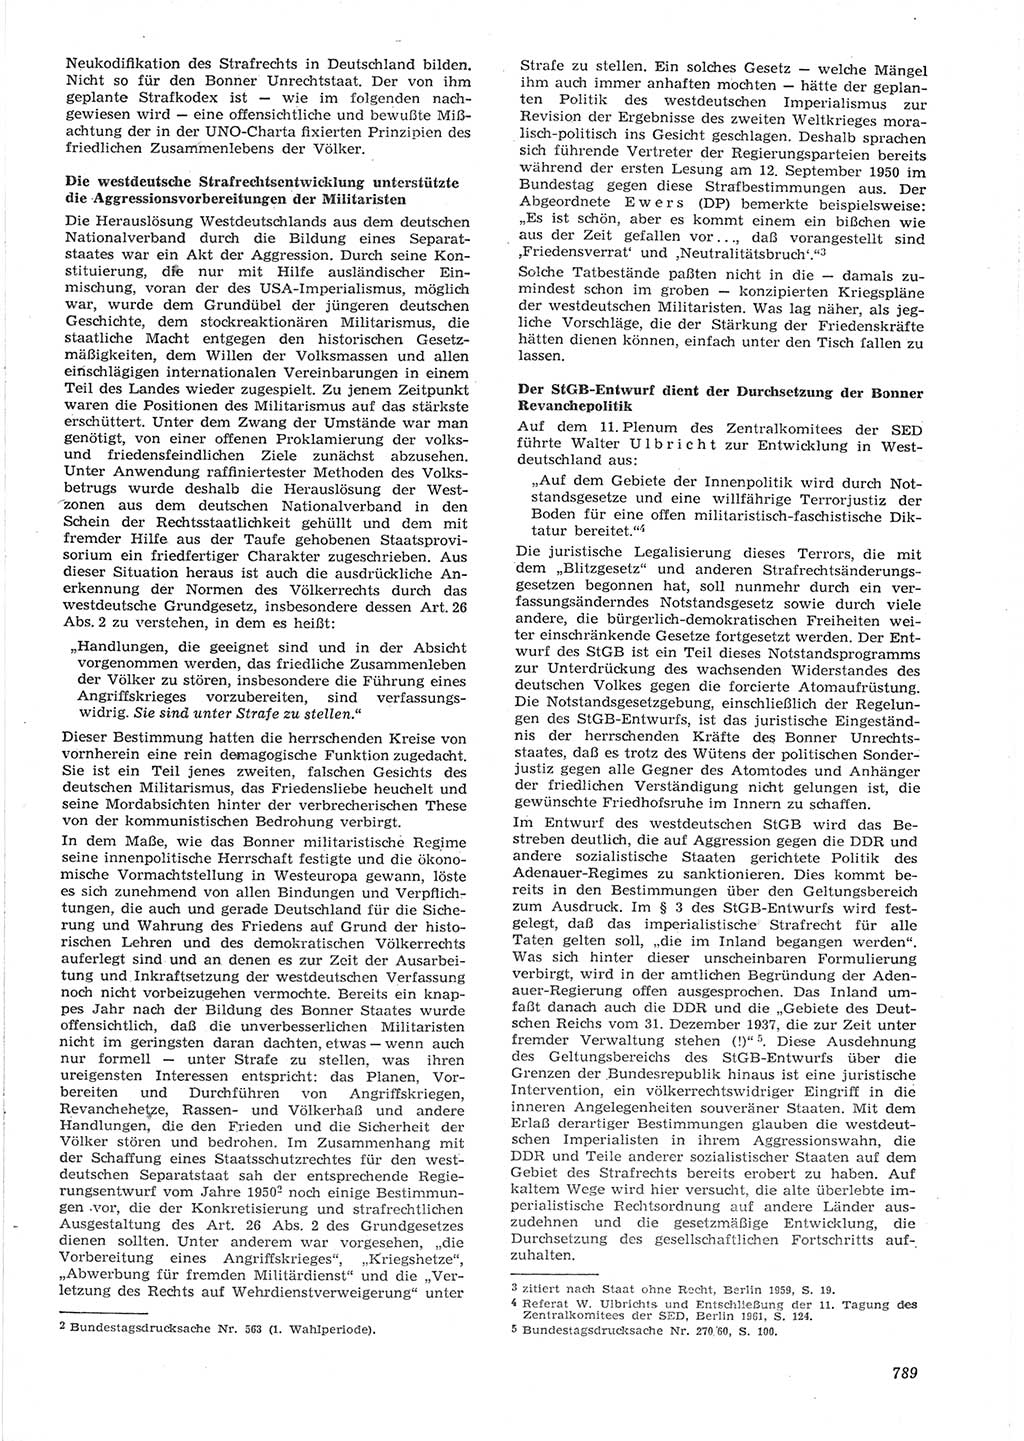 Neue Justiz (NJ), Zeitschrift für Recht und Rechtswissenschaft [Deutsche Demokratische Republik (DDR)], 15. Jahrgang 1961, Seite 789 (NJ DDR 1961, S. 789)